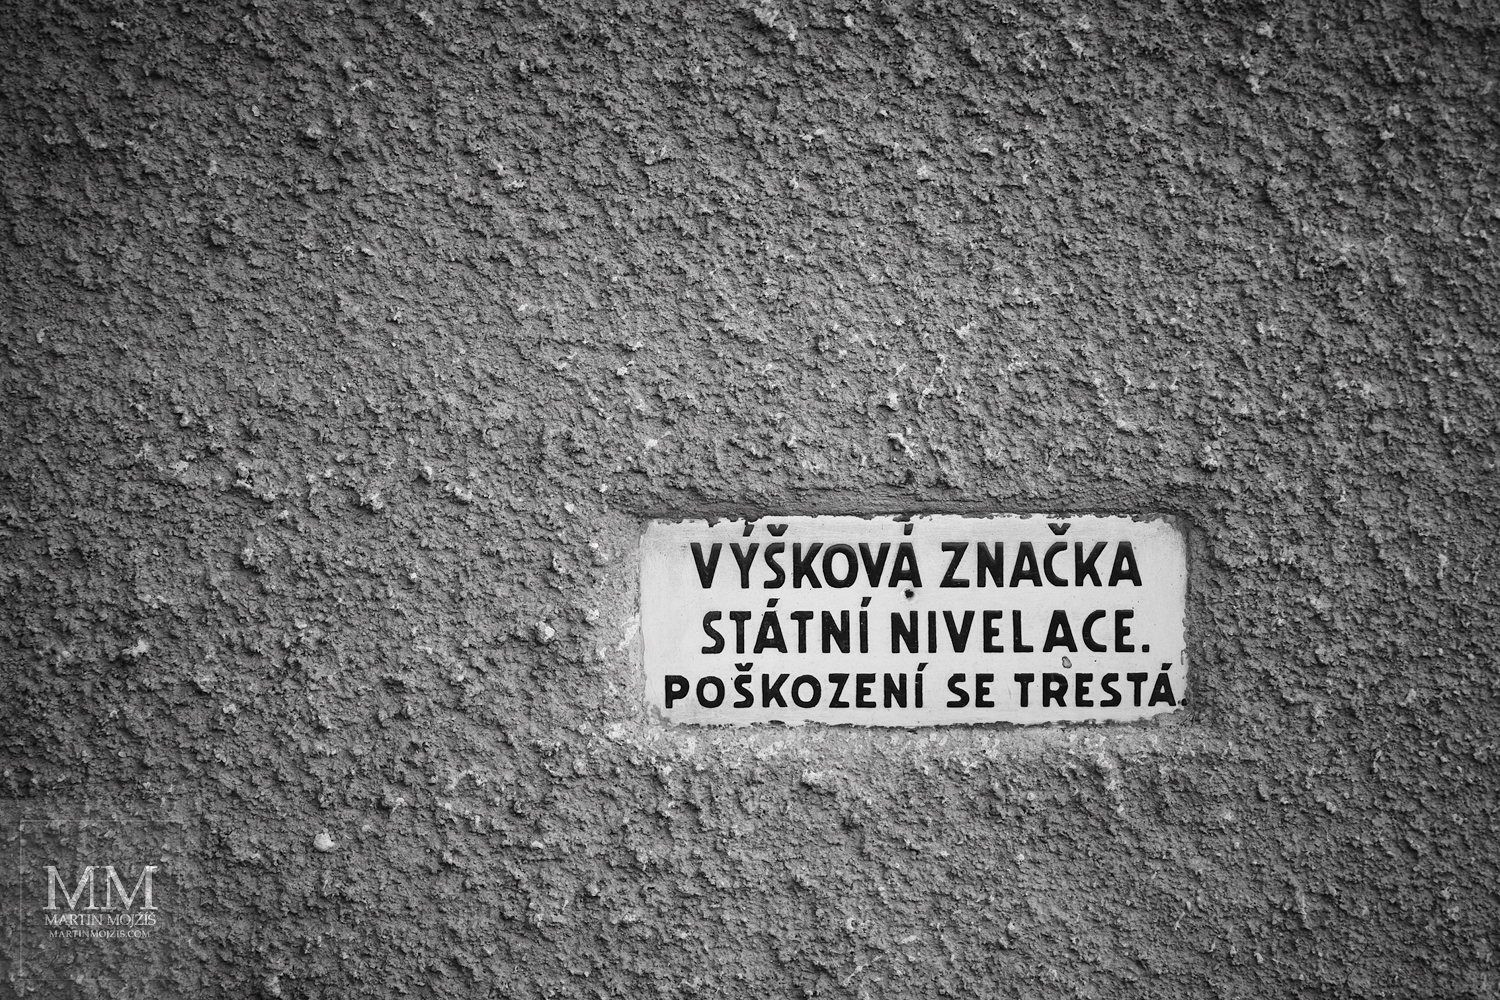 Tabulka Výšková značka státní nivelace. Umělecká černobílá fotografie s názvem VÝŠKOVÁ ZNAČKA. Fotograf Martin Mojžíš.